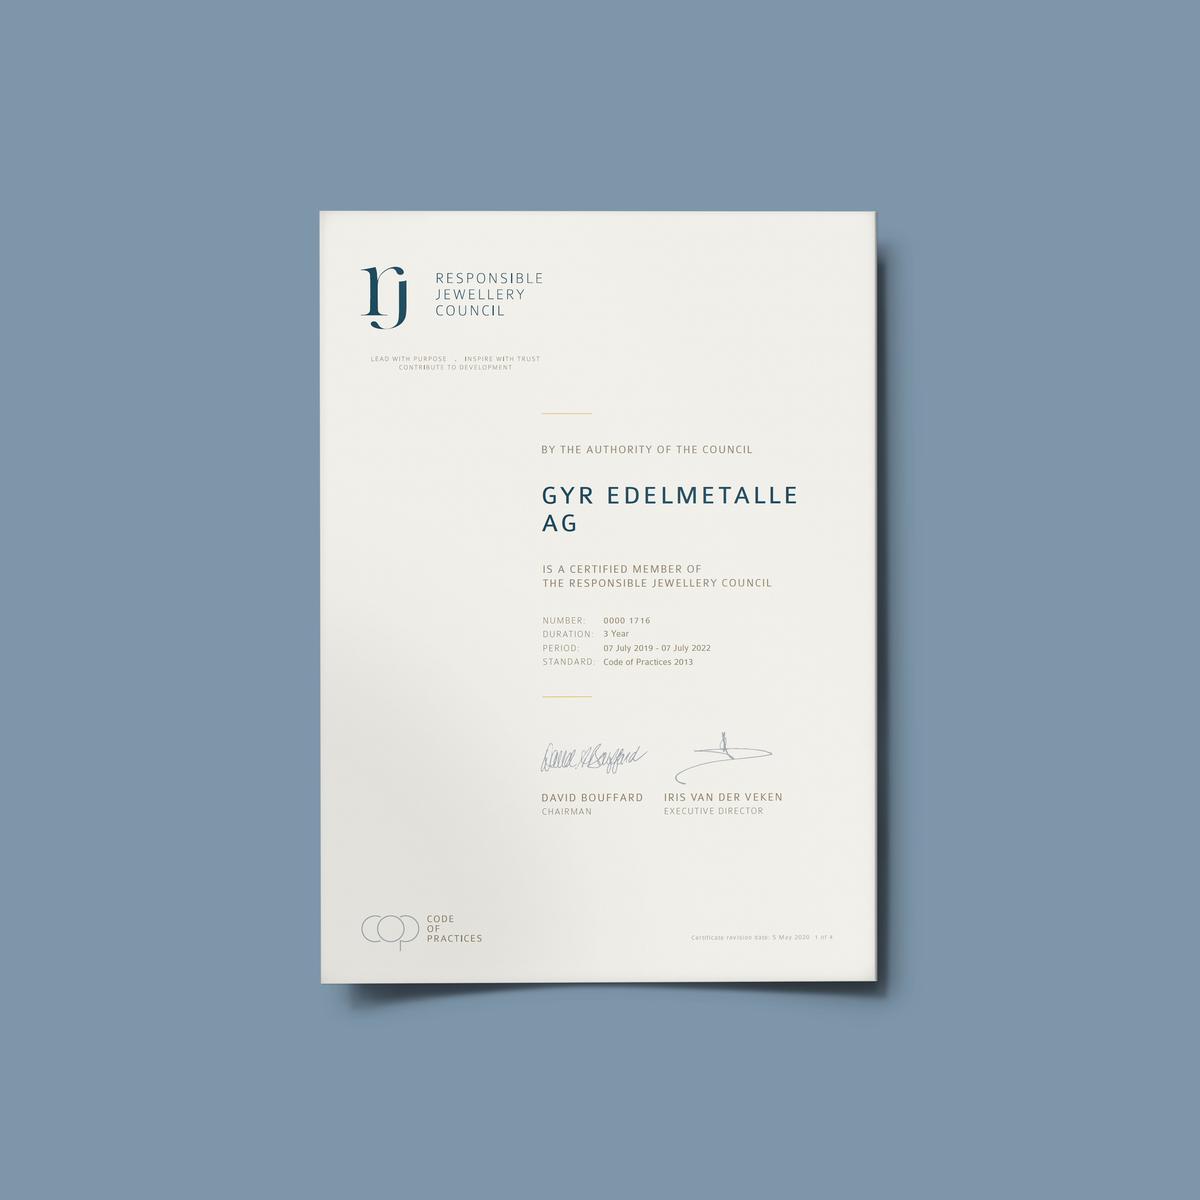 Das aktuelle RJC Member Certificate für die Gyr Edelmetalle AG.